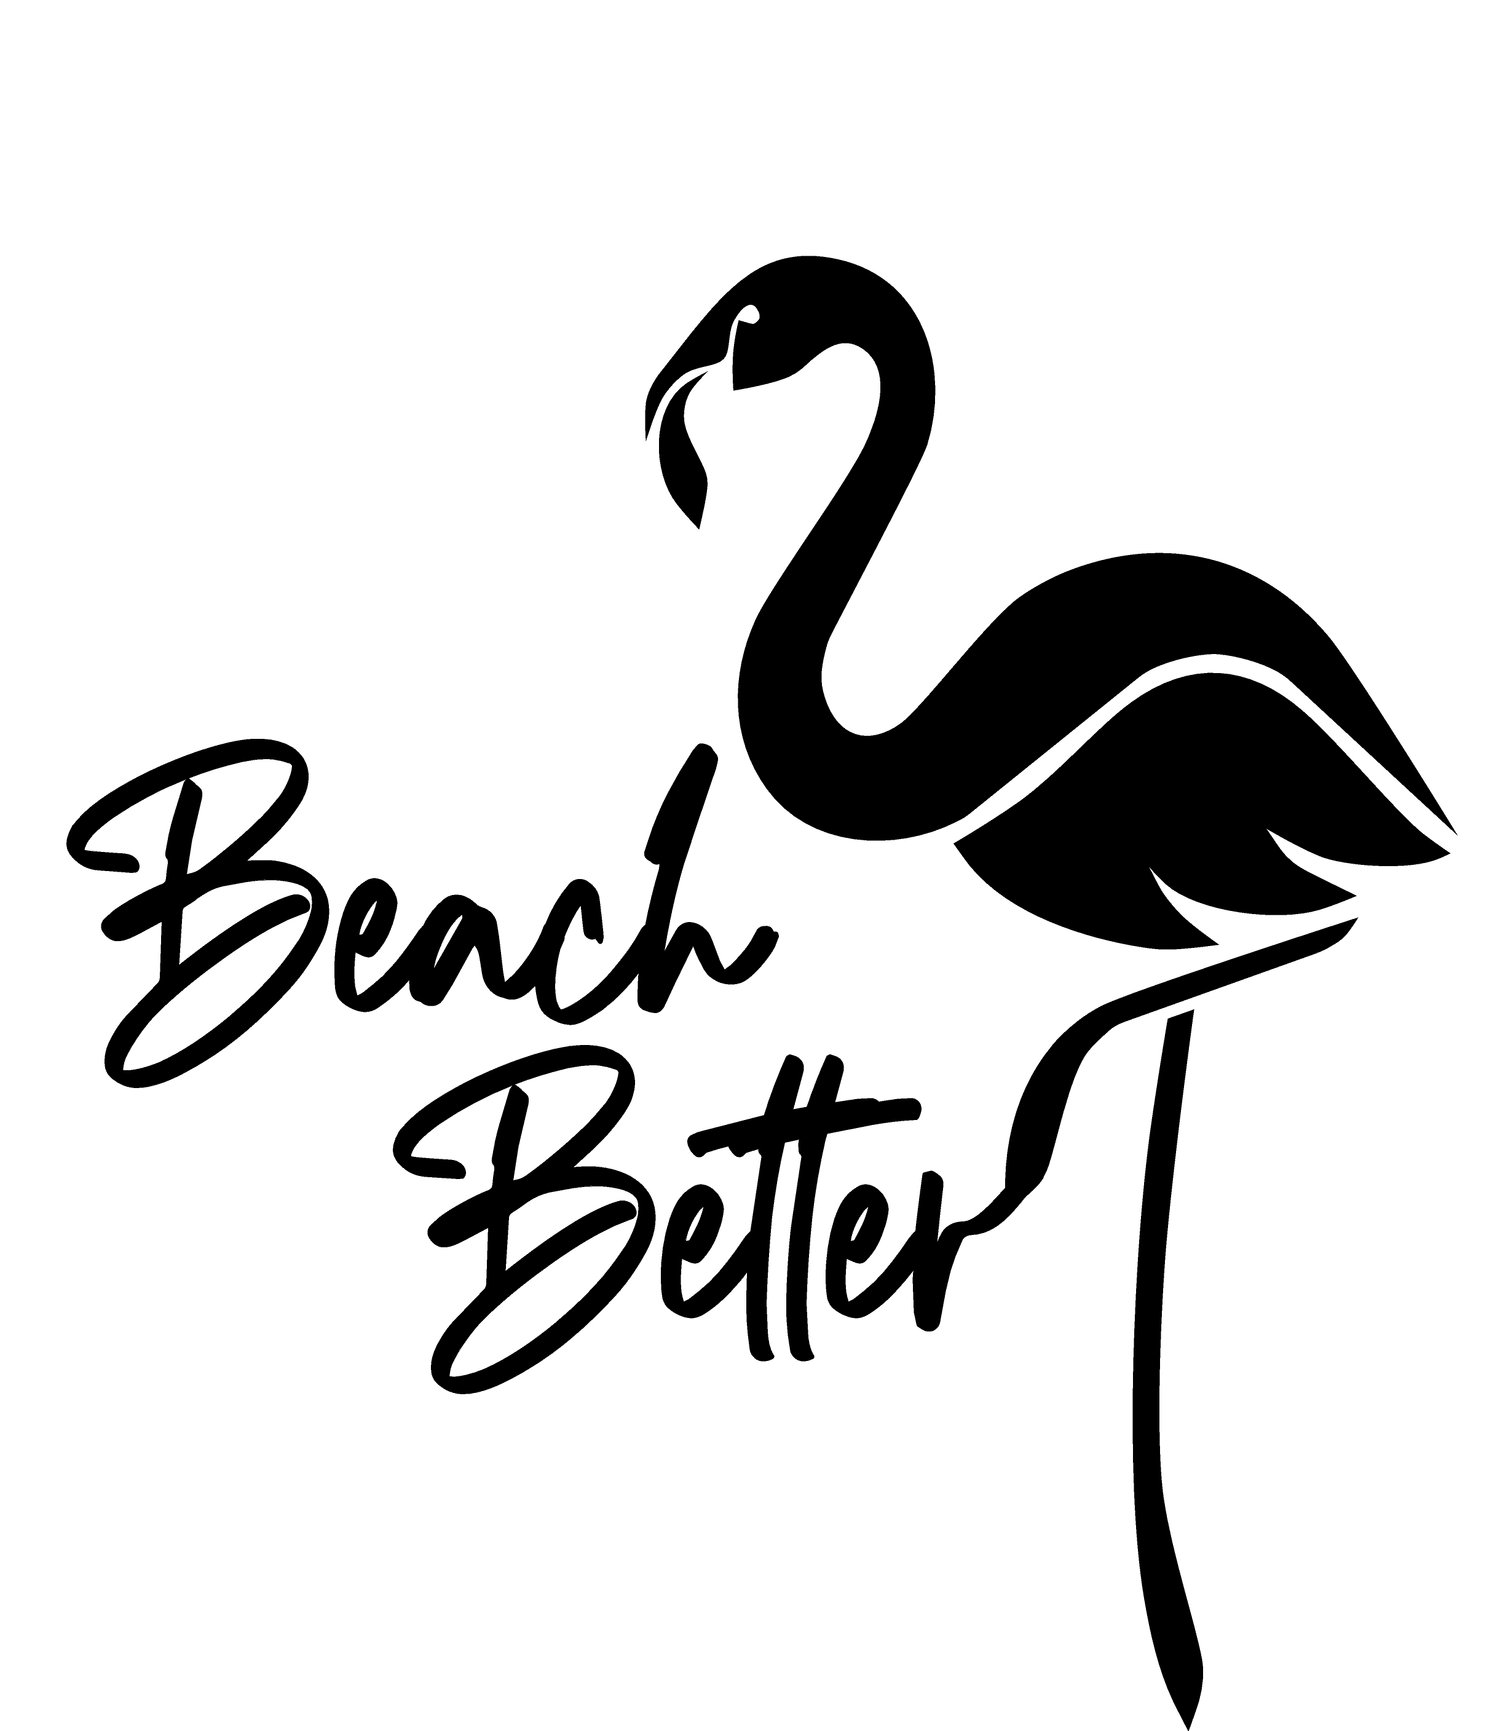 Always Beach Better